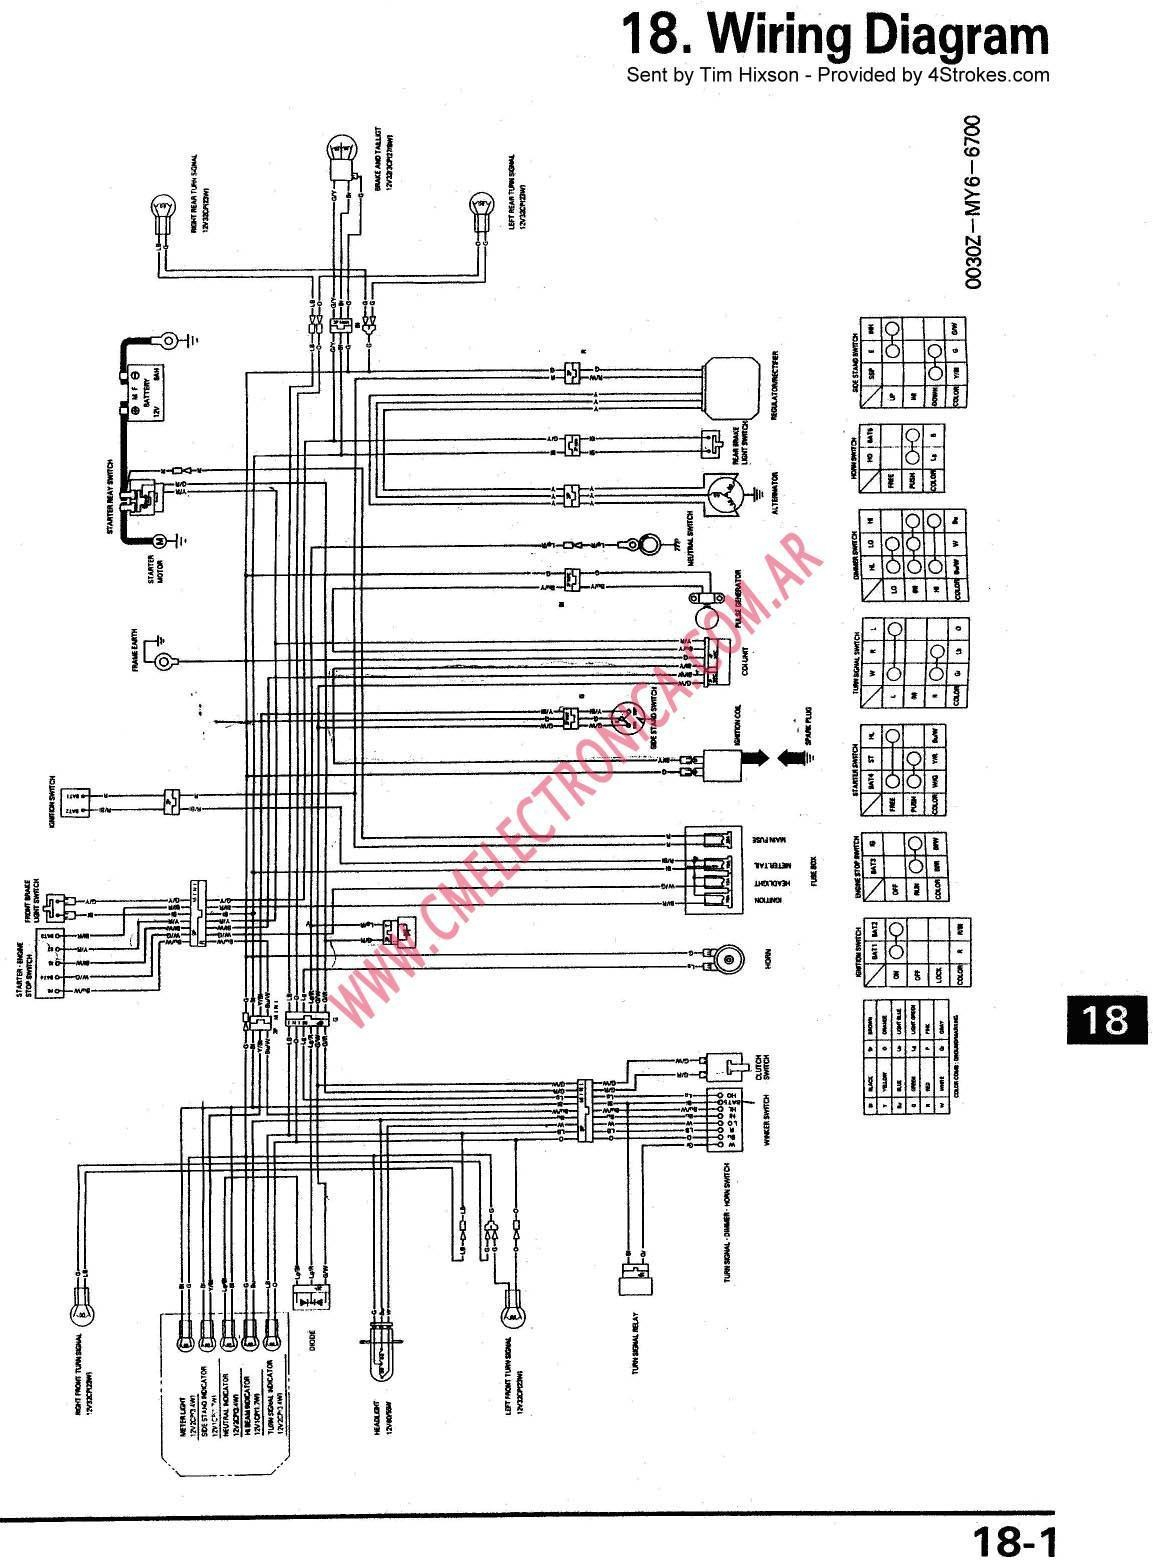 Ruckus Wiring Diagram | Manual E-Books - Honda Ruckus Wiring Diagram